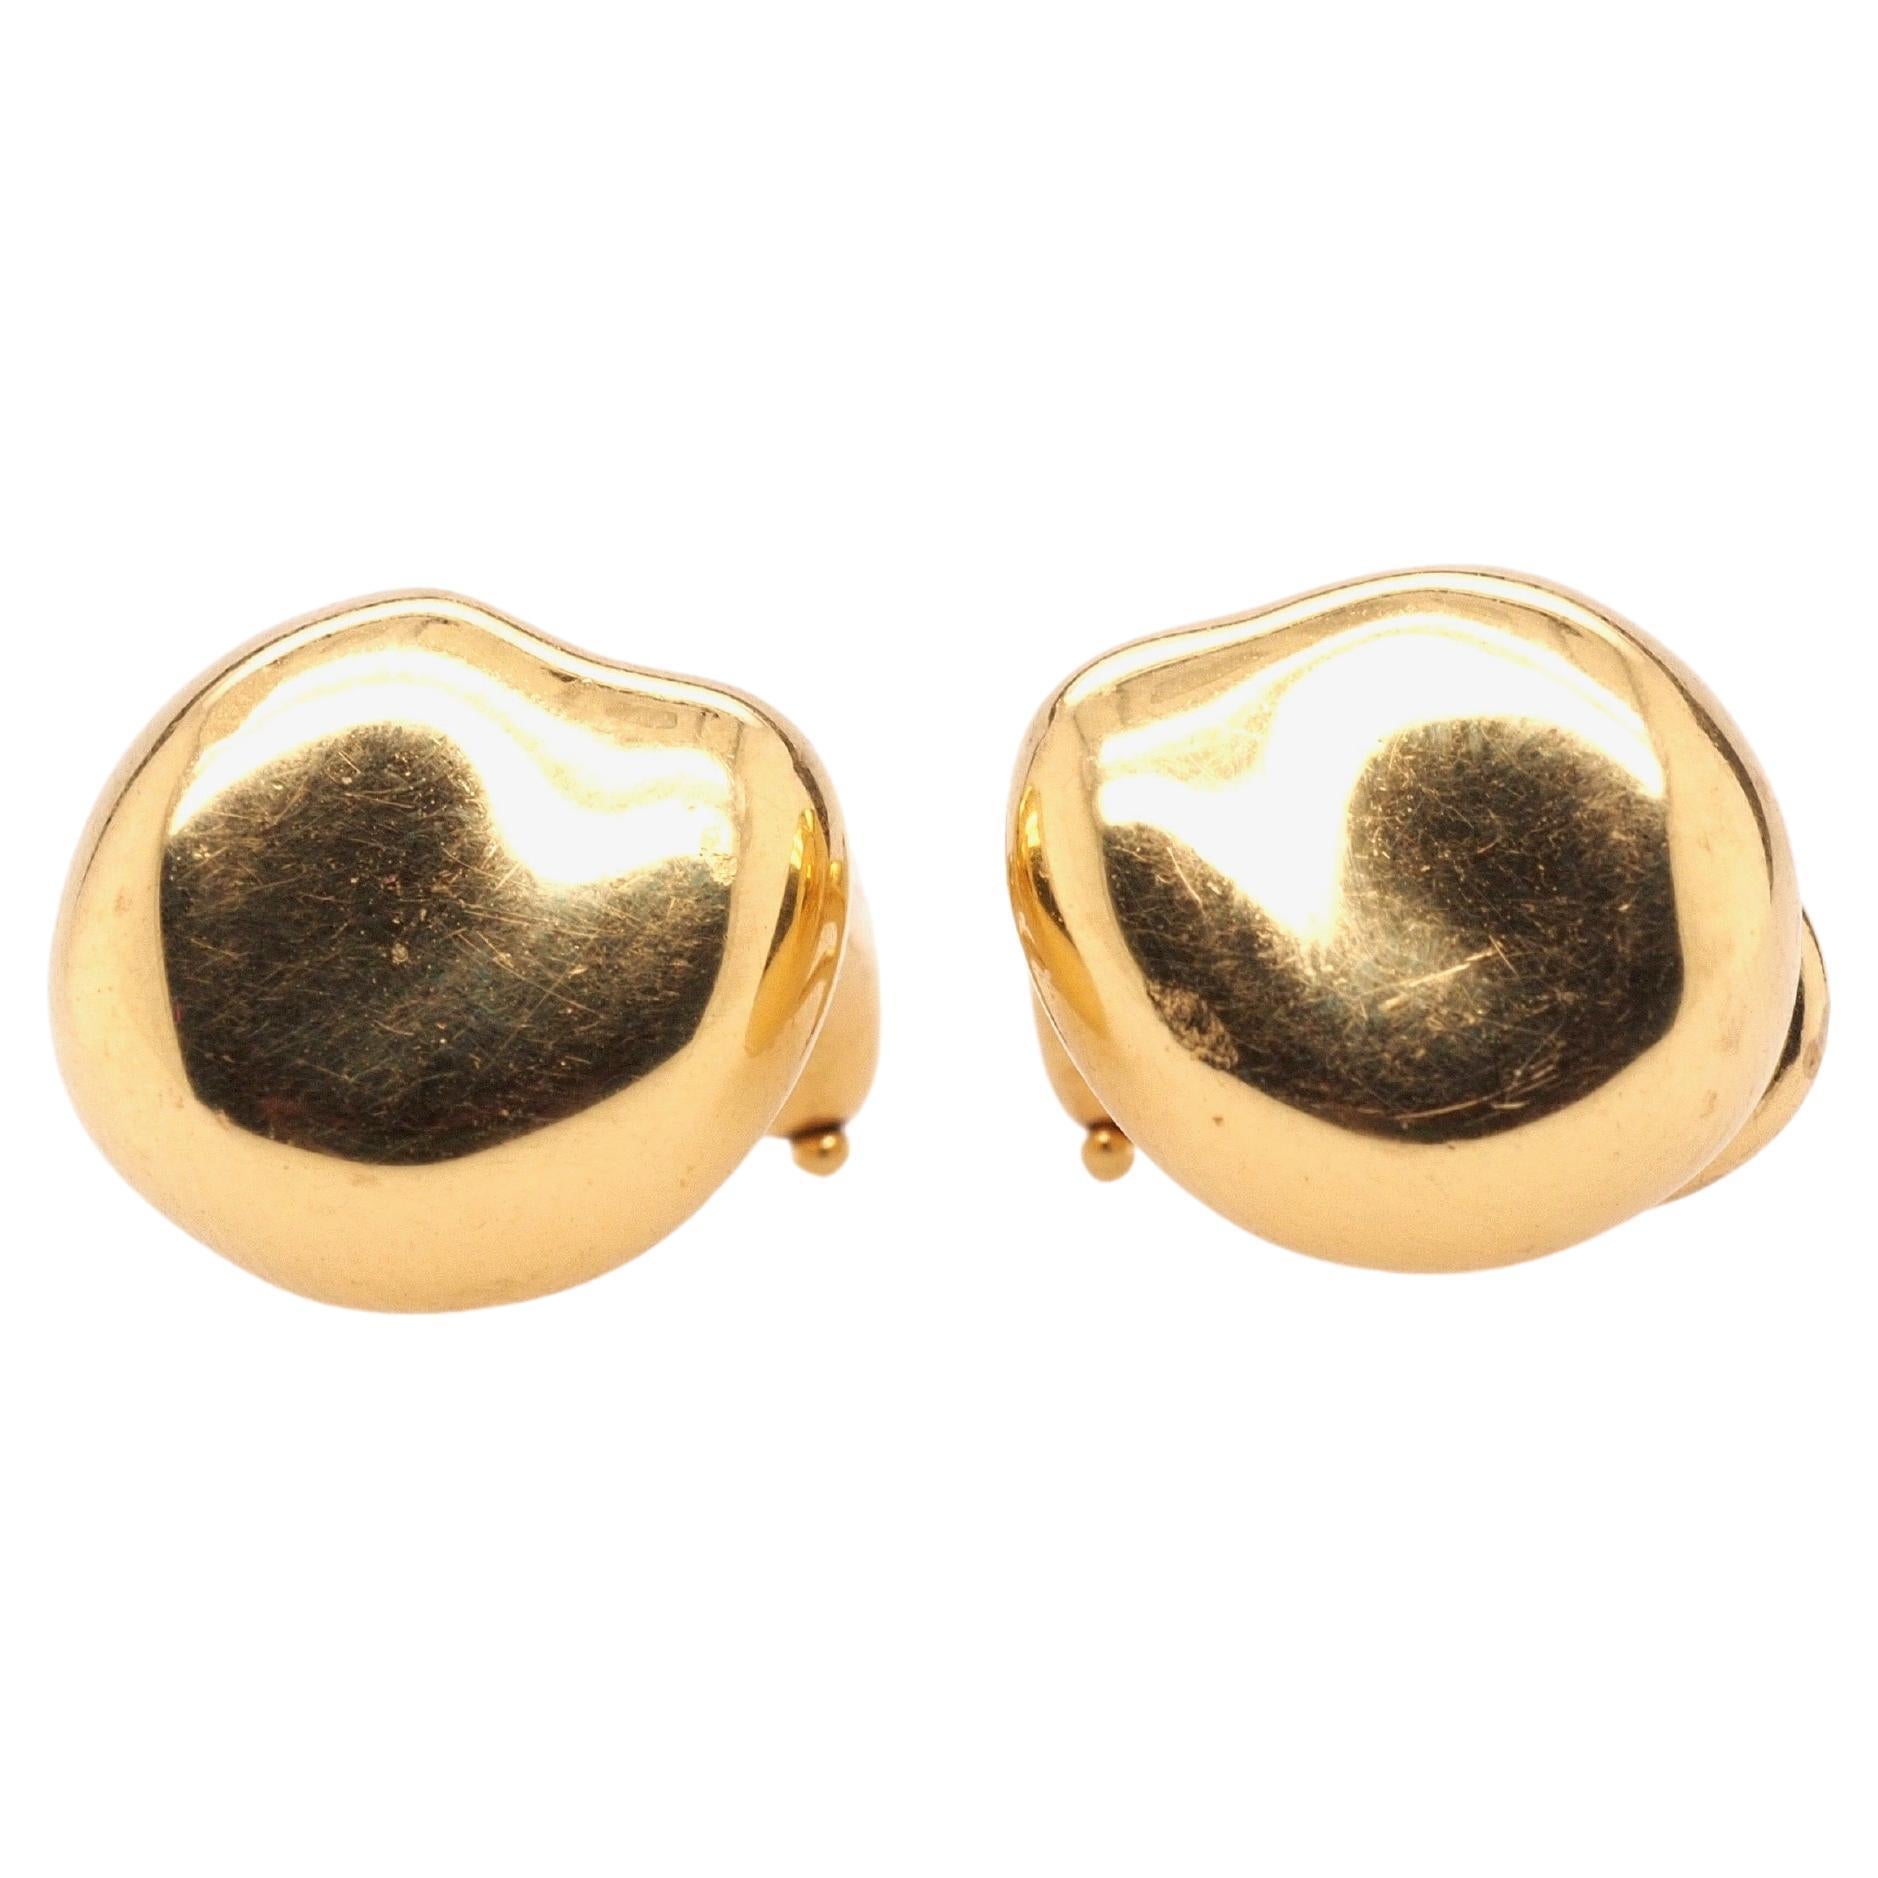 Vintage Tiffany & Co. Elsa Peretti Bean Earrings in 18K Yellow Gold